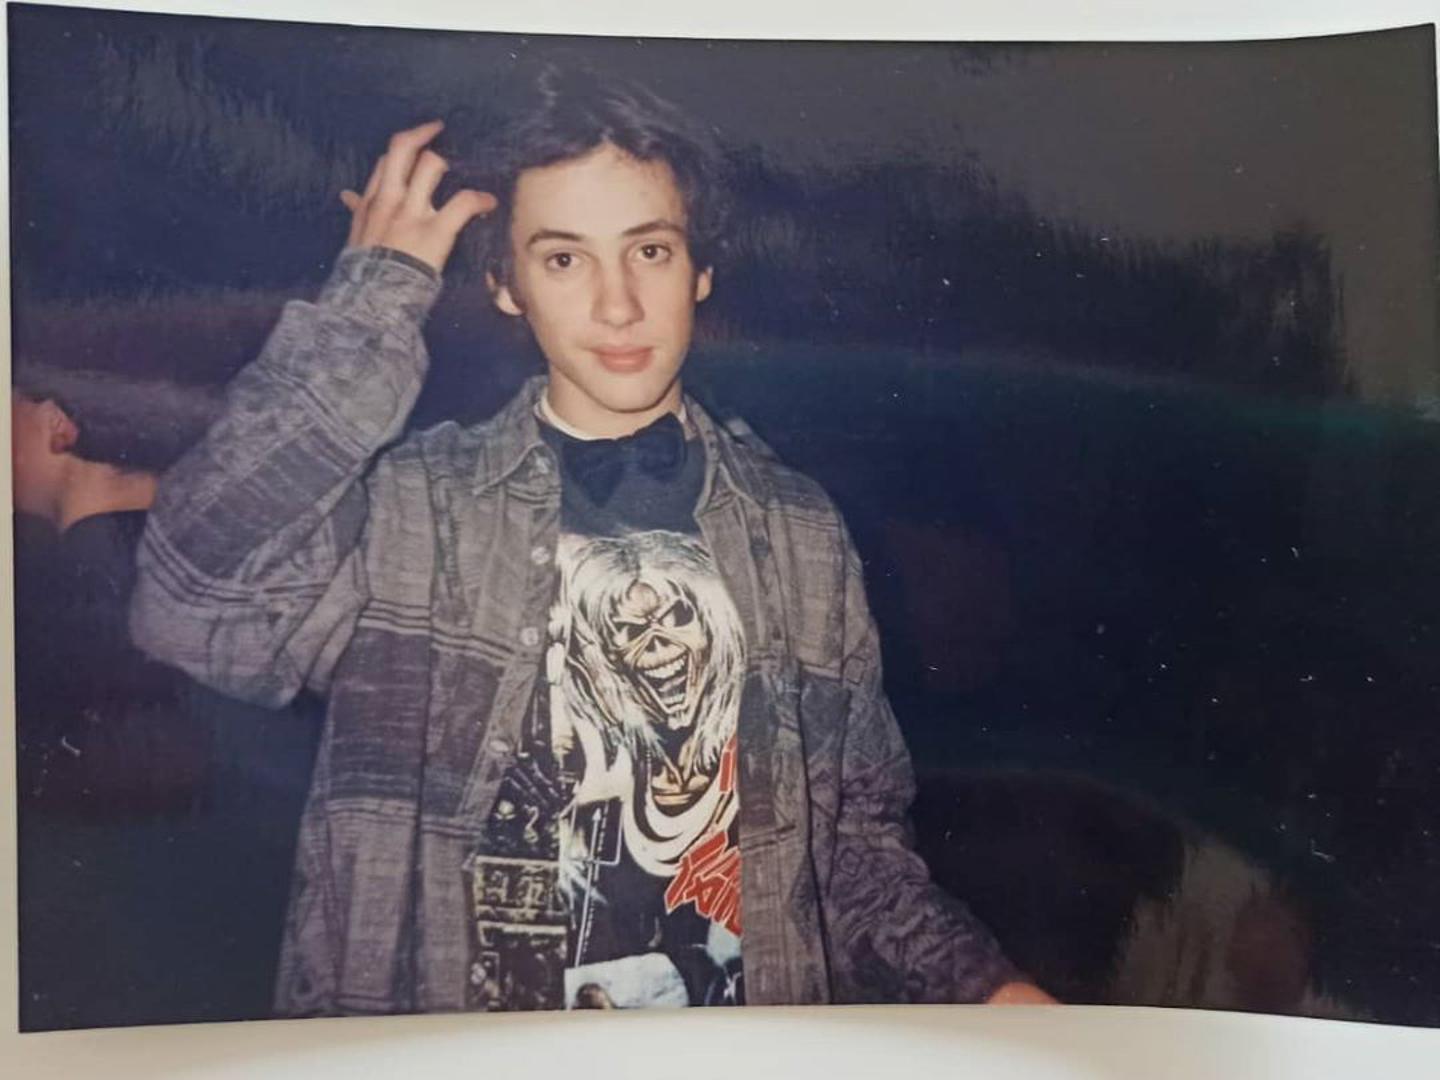 Glumac Goran Bogdan na slici iz rane mladosti otkrio je fanovima kako je oduvijek imao specifičan ukus za sve spojivši majicu metal benda Iron Maiden i ni više ni manje nego – leptir mašnu!